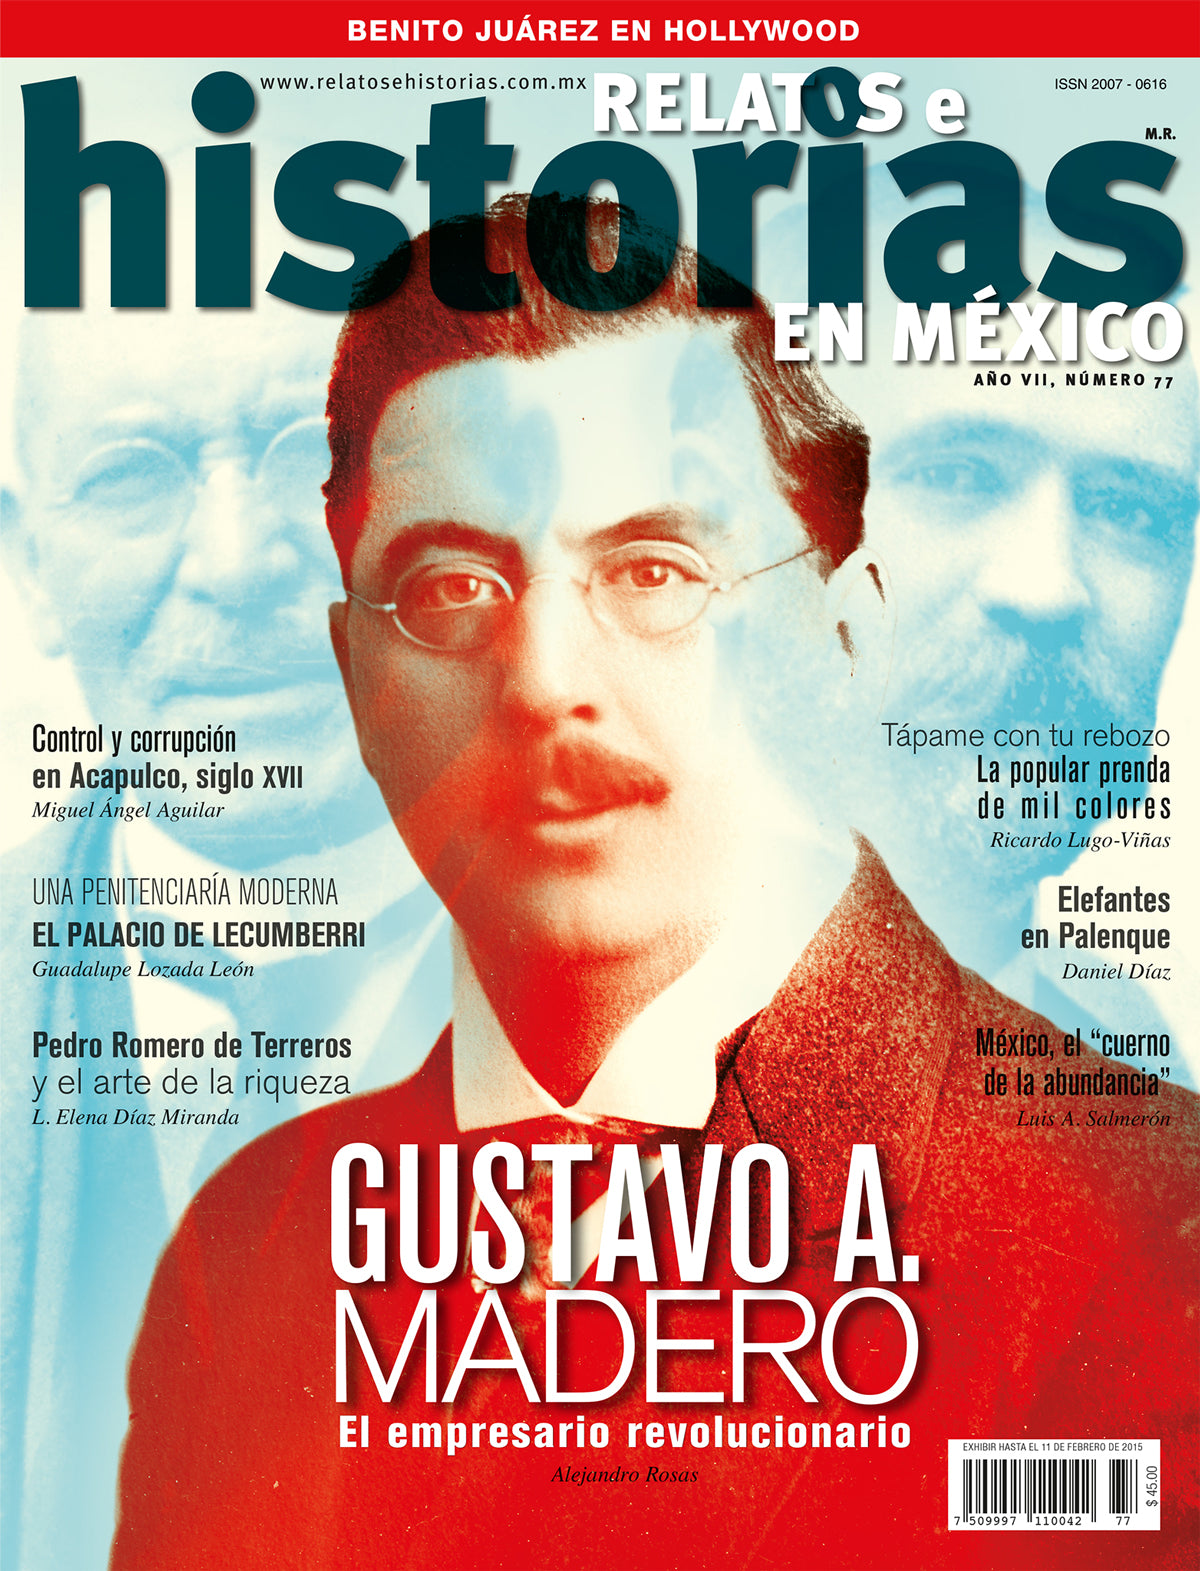 Gustavo A. Madero. El empresarioo revolucionario